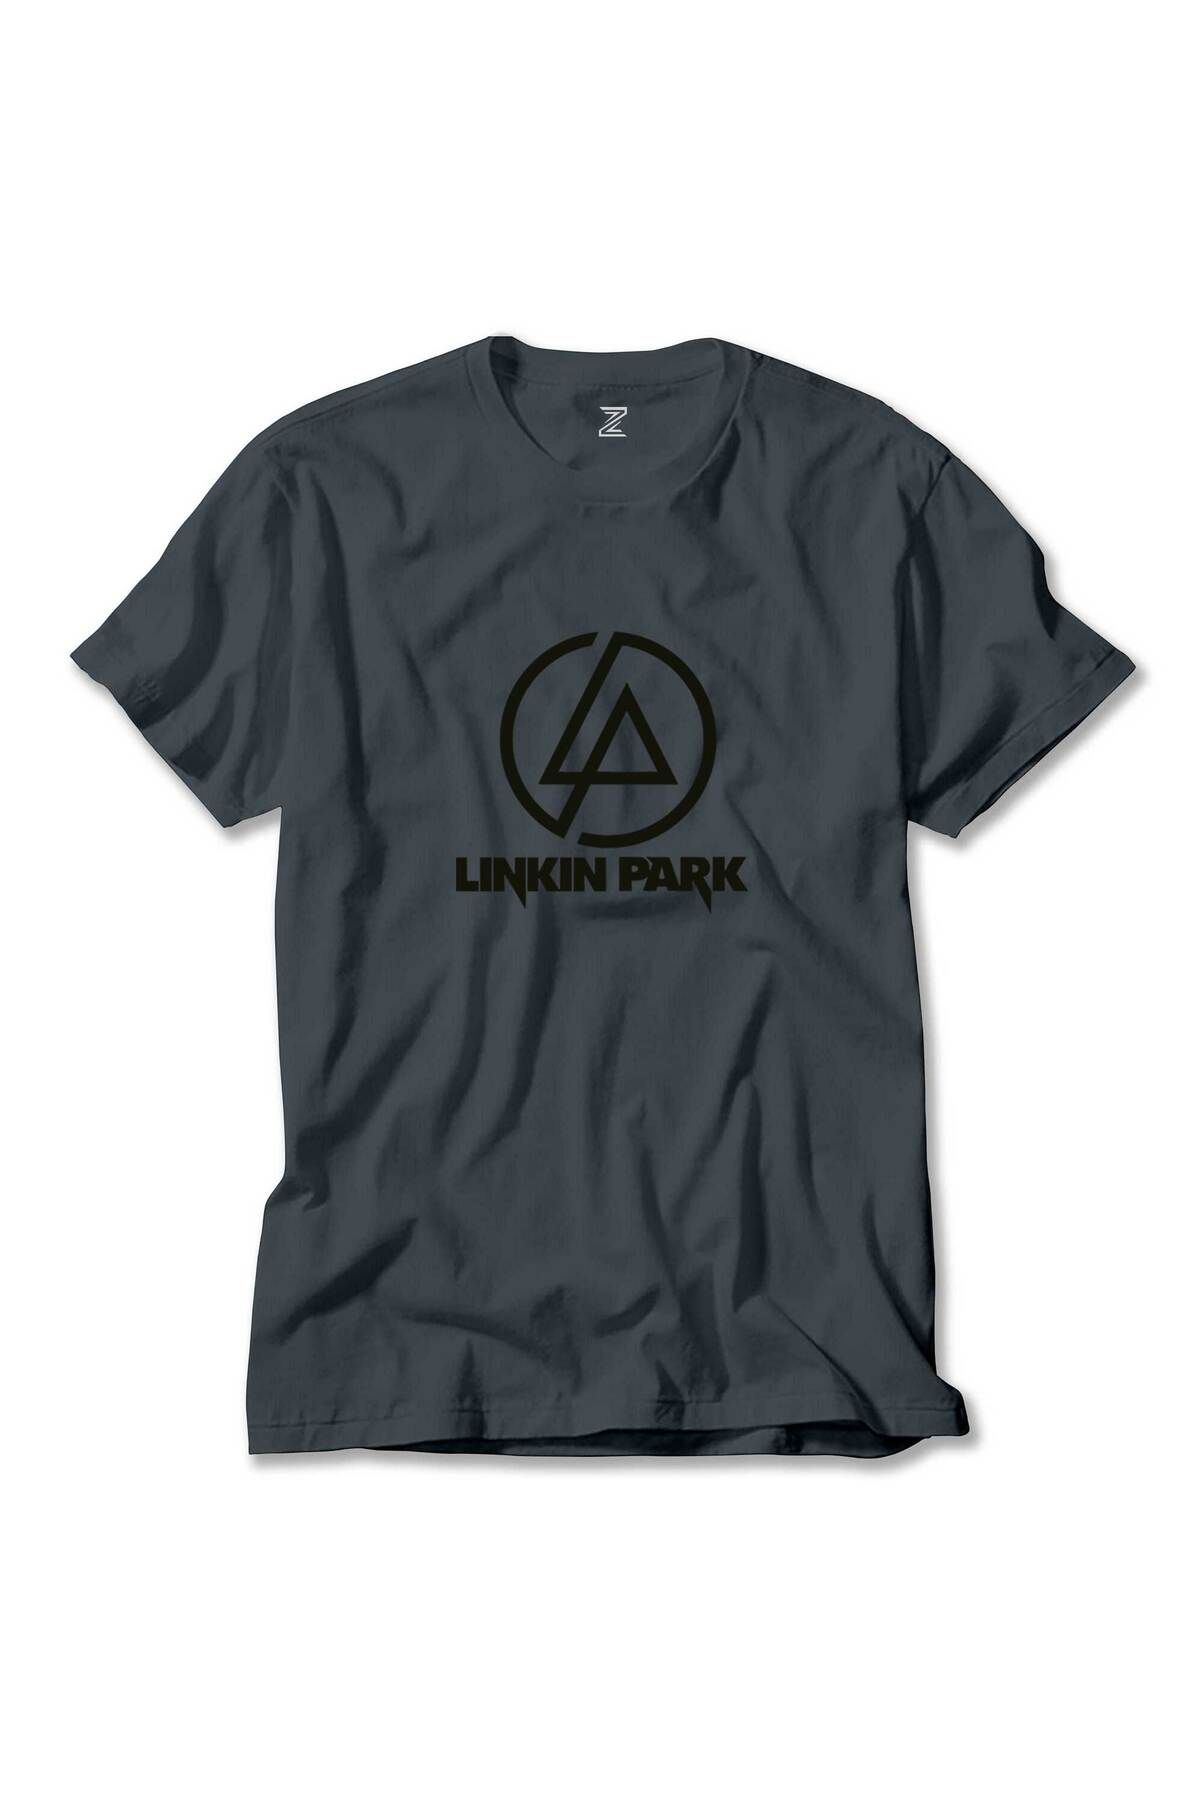 Z zepplin Linkin Park Logo Füme Tişört